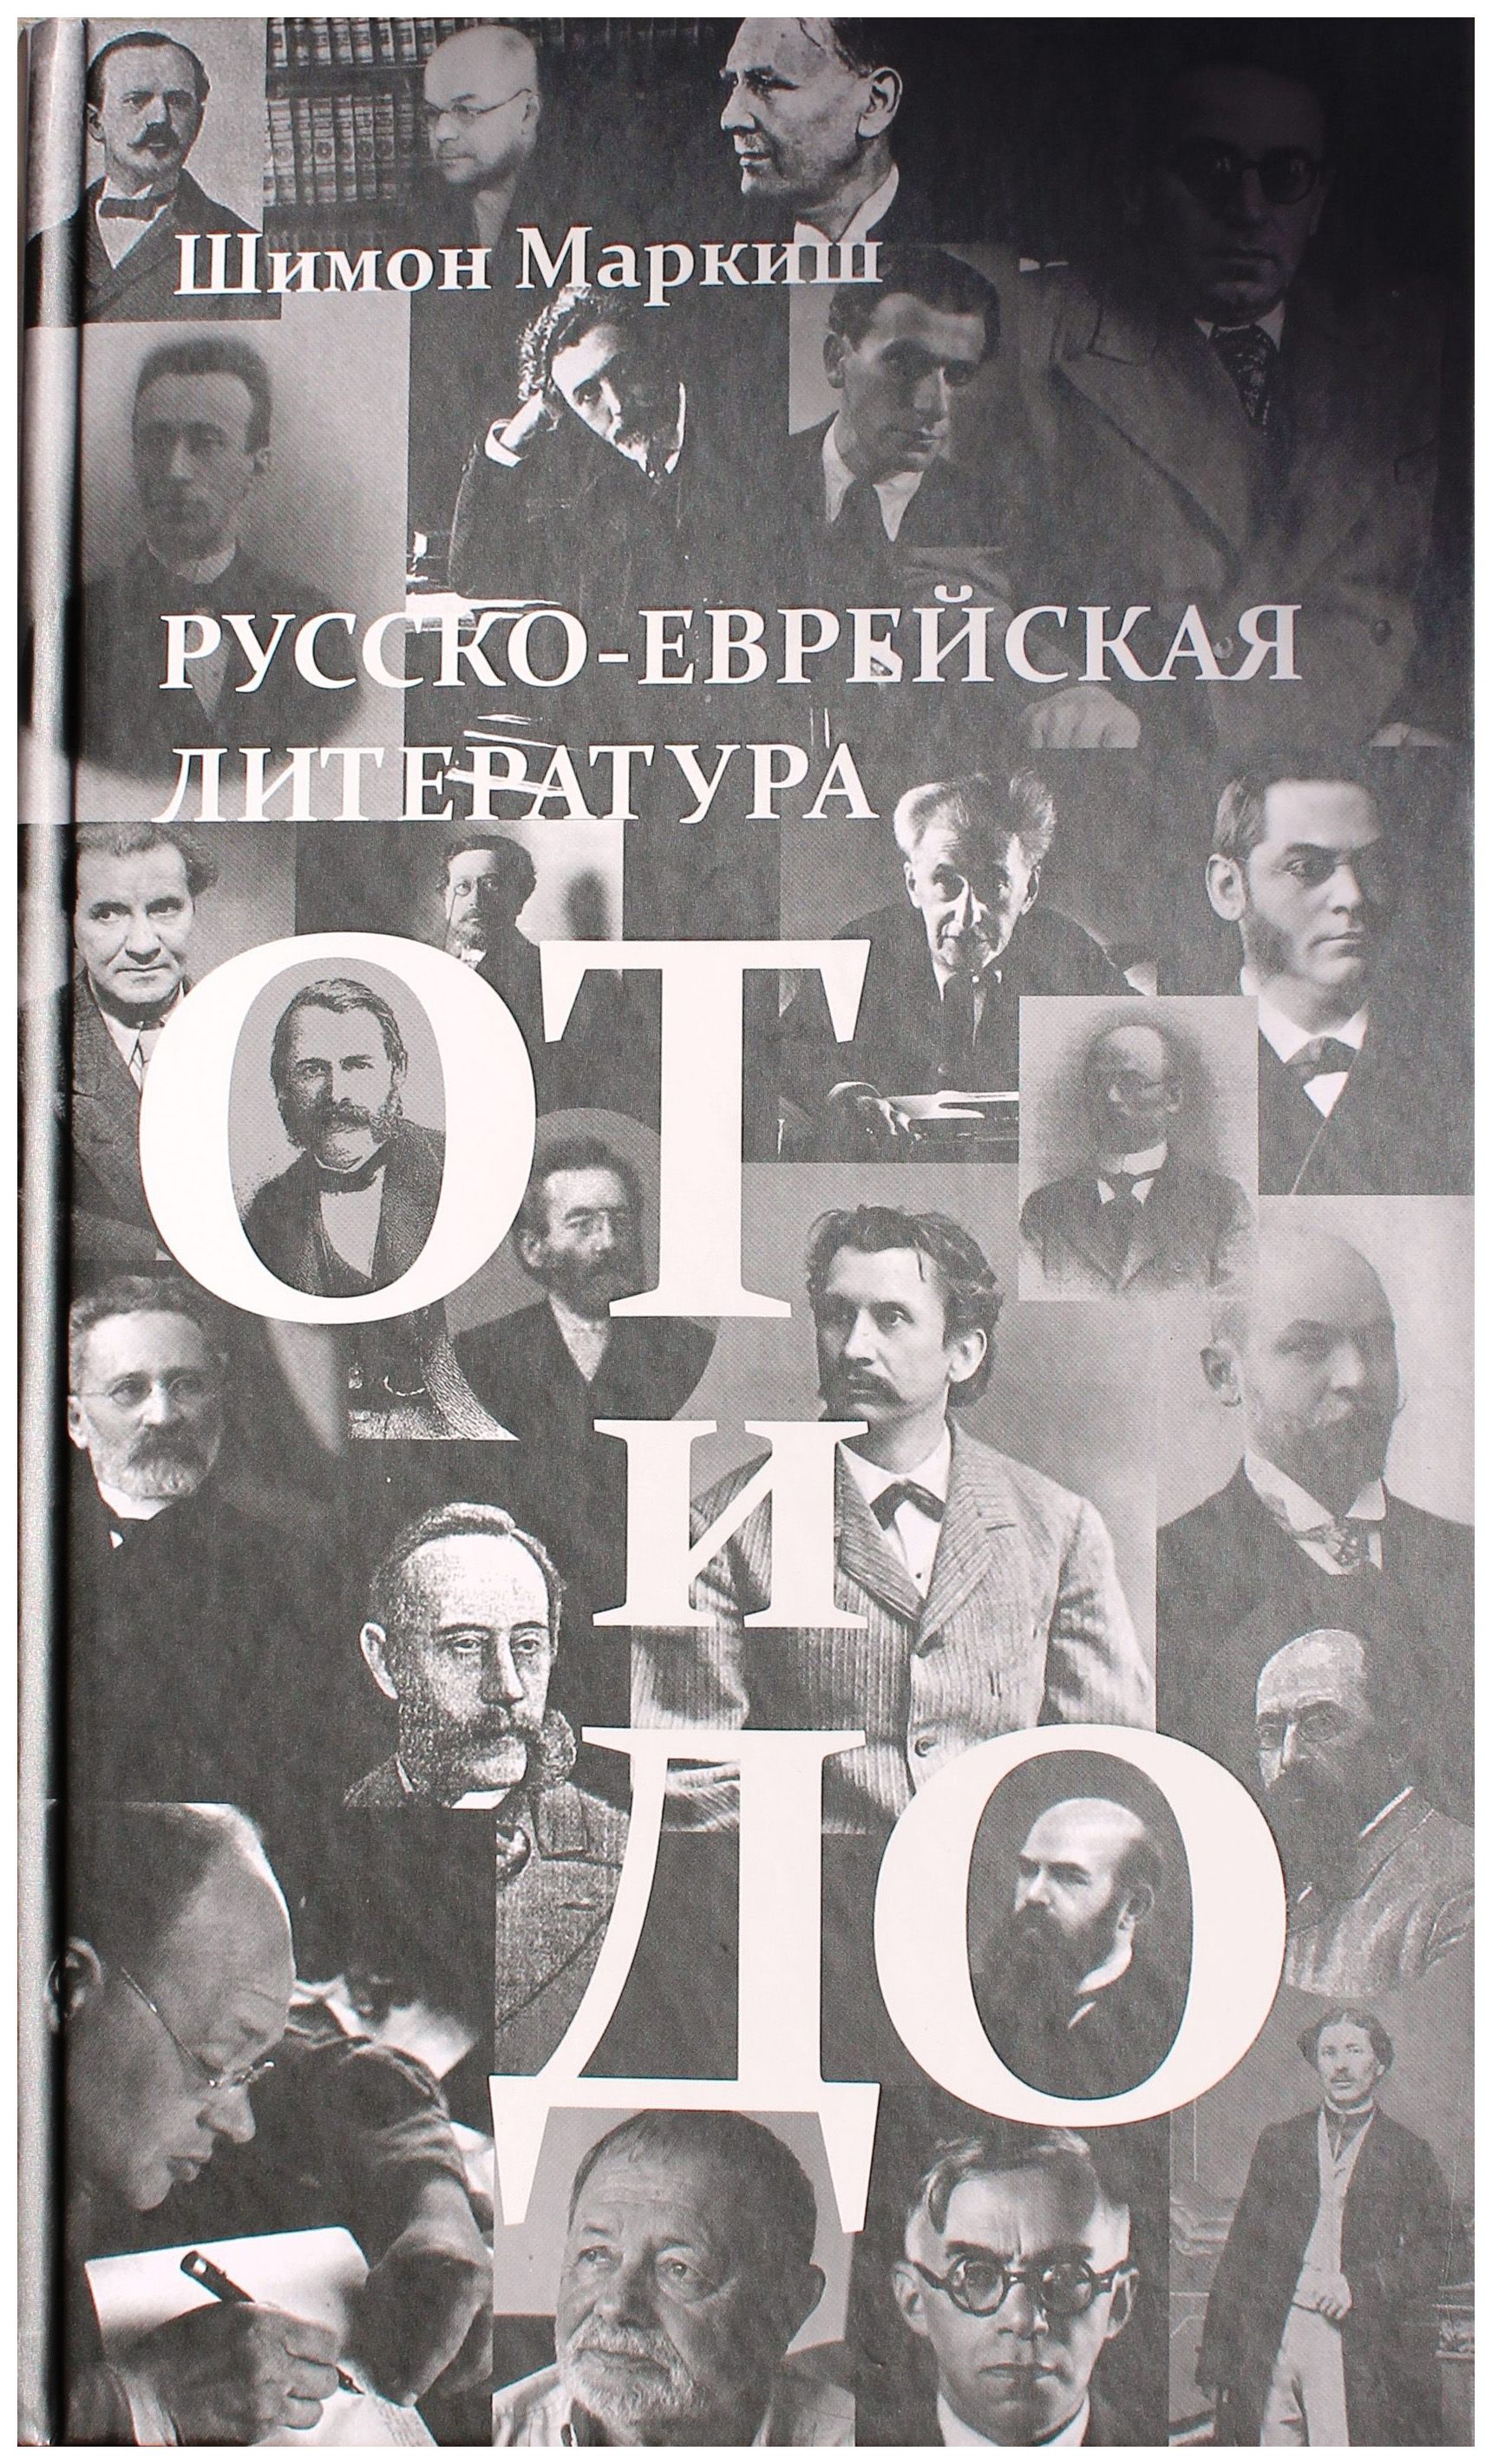 Русско-еврейская литература